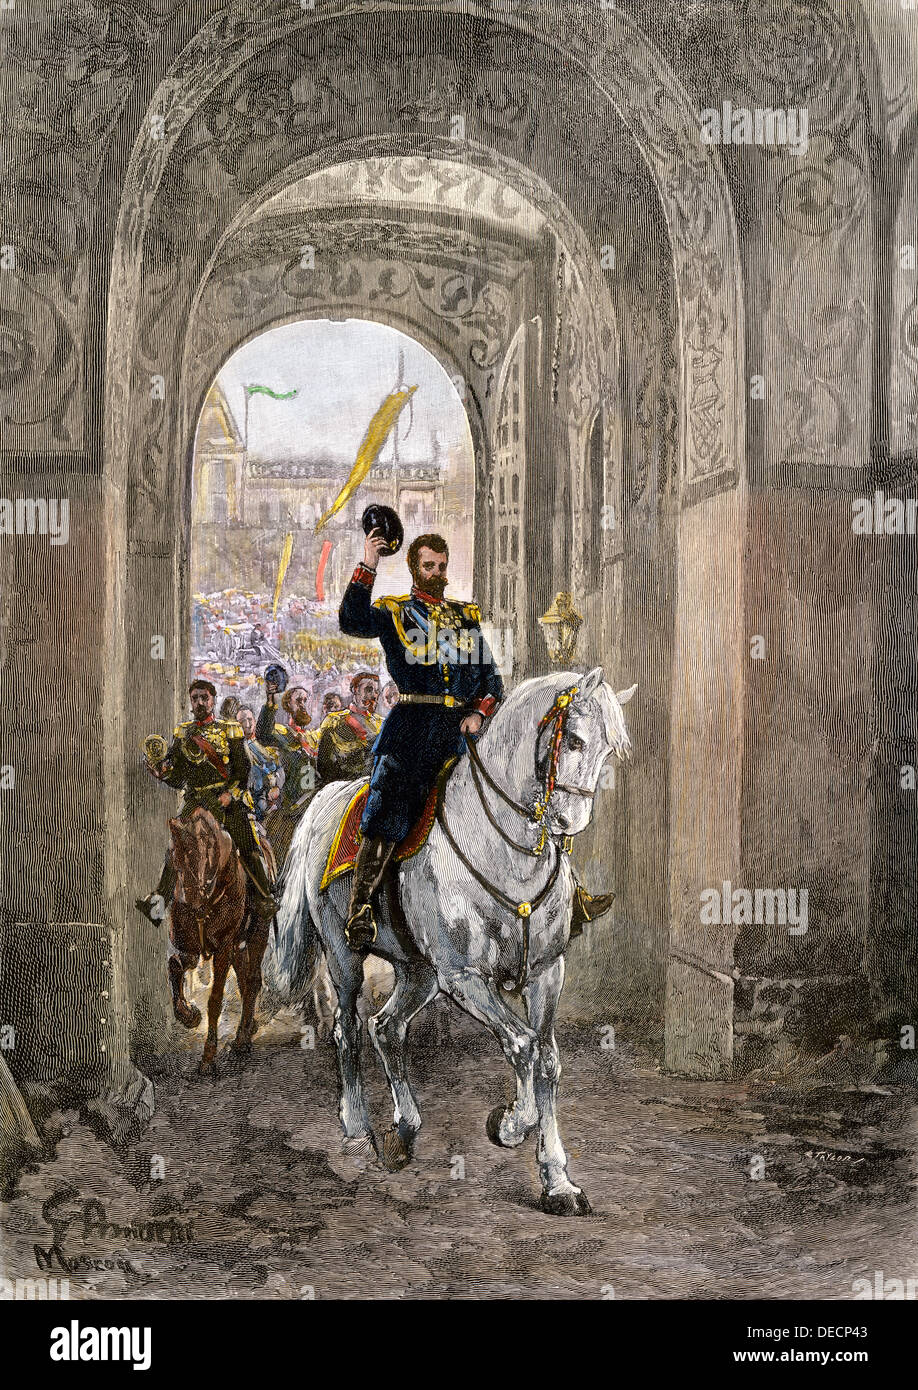 Le Tsar Nicholas II entrant dans le Kremlin gate pour son couronnement, 1896. À la main, gravure sur bois Banque D'Images